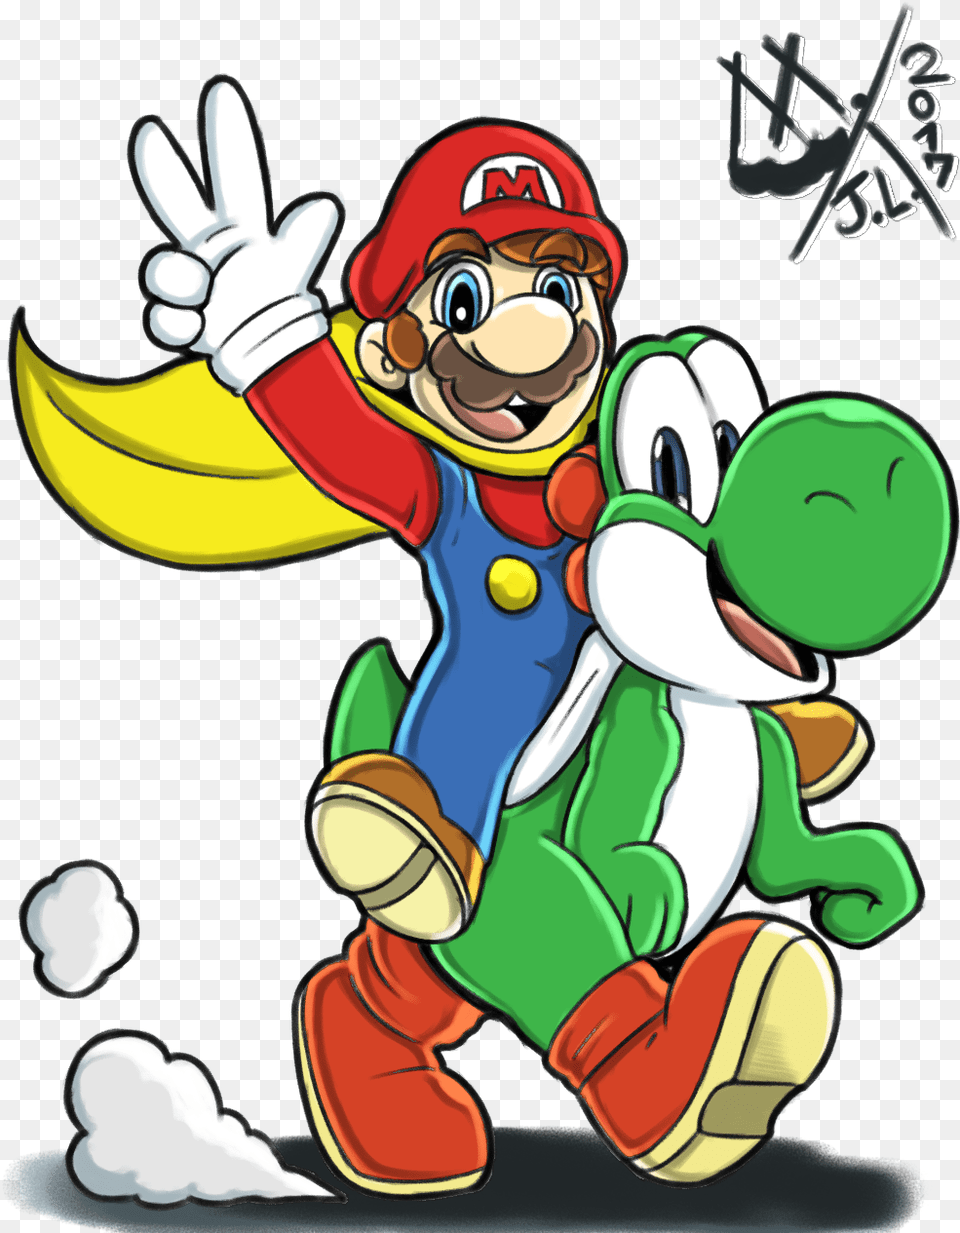 Super Mario World Cartoon, Game, Super Mario, Baby, Person Png Image